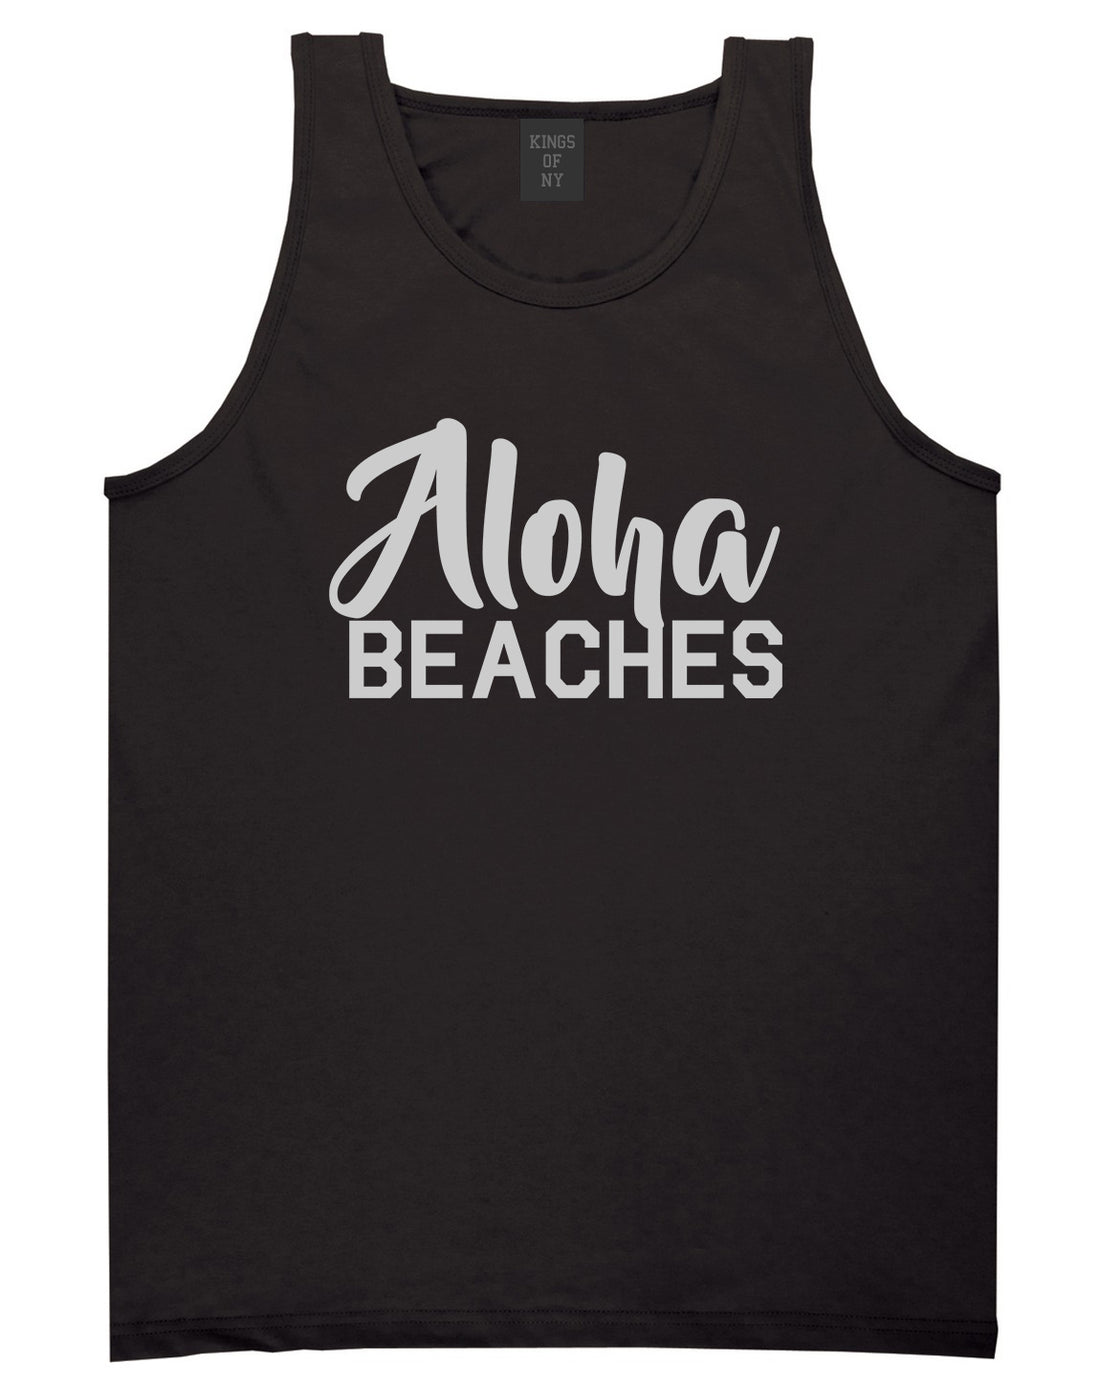 Aloha Beaches Black Tank Top Shirt by Kings Of NY